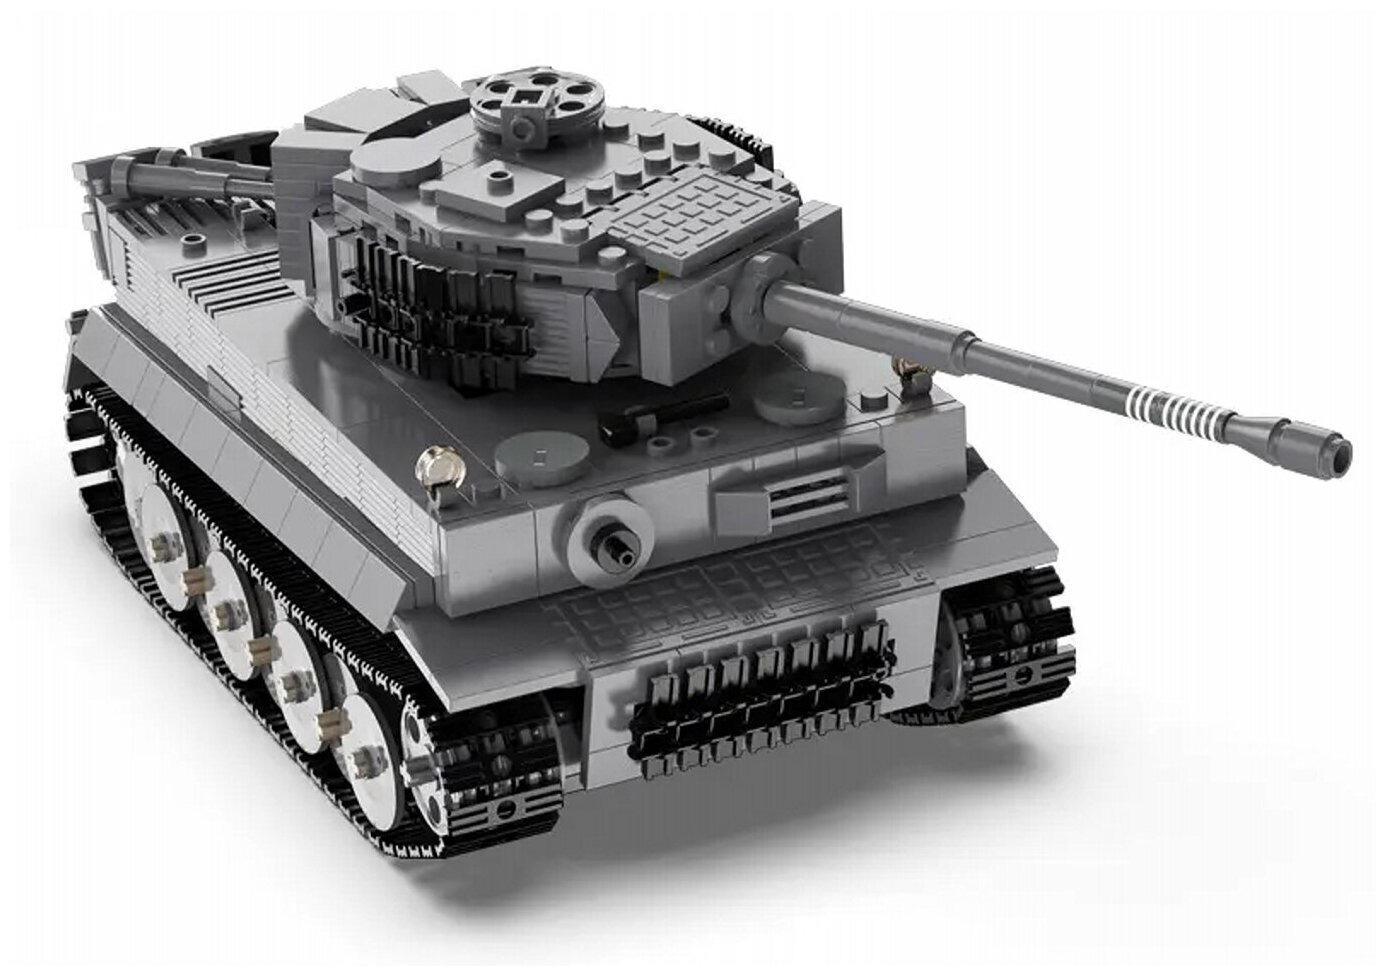 Конструктор Танк Tiger 1:35 на РУ (925 деталей) в коробке конструктор армия россии танк т 34 969 деталей